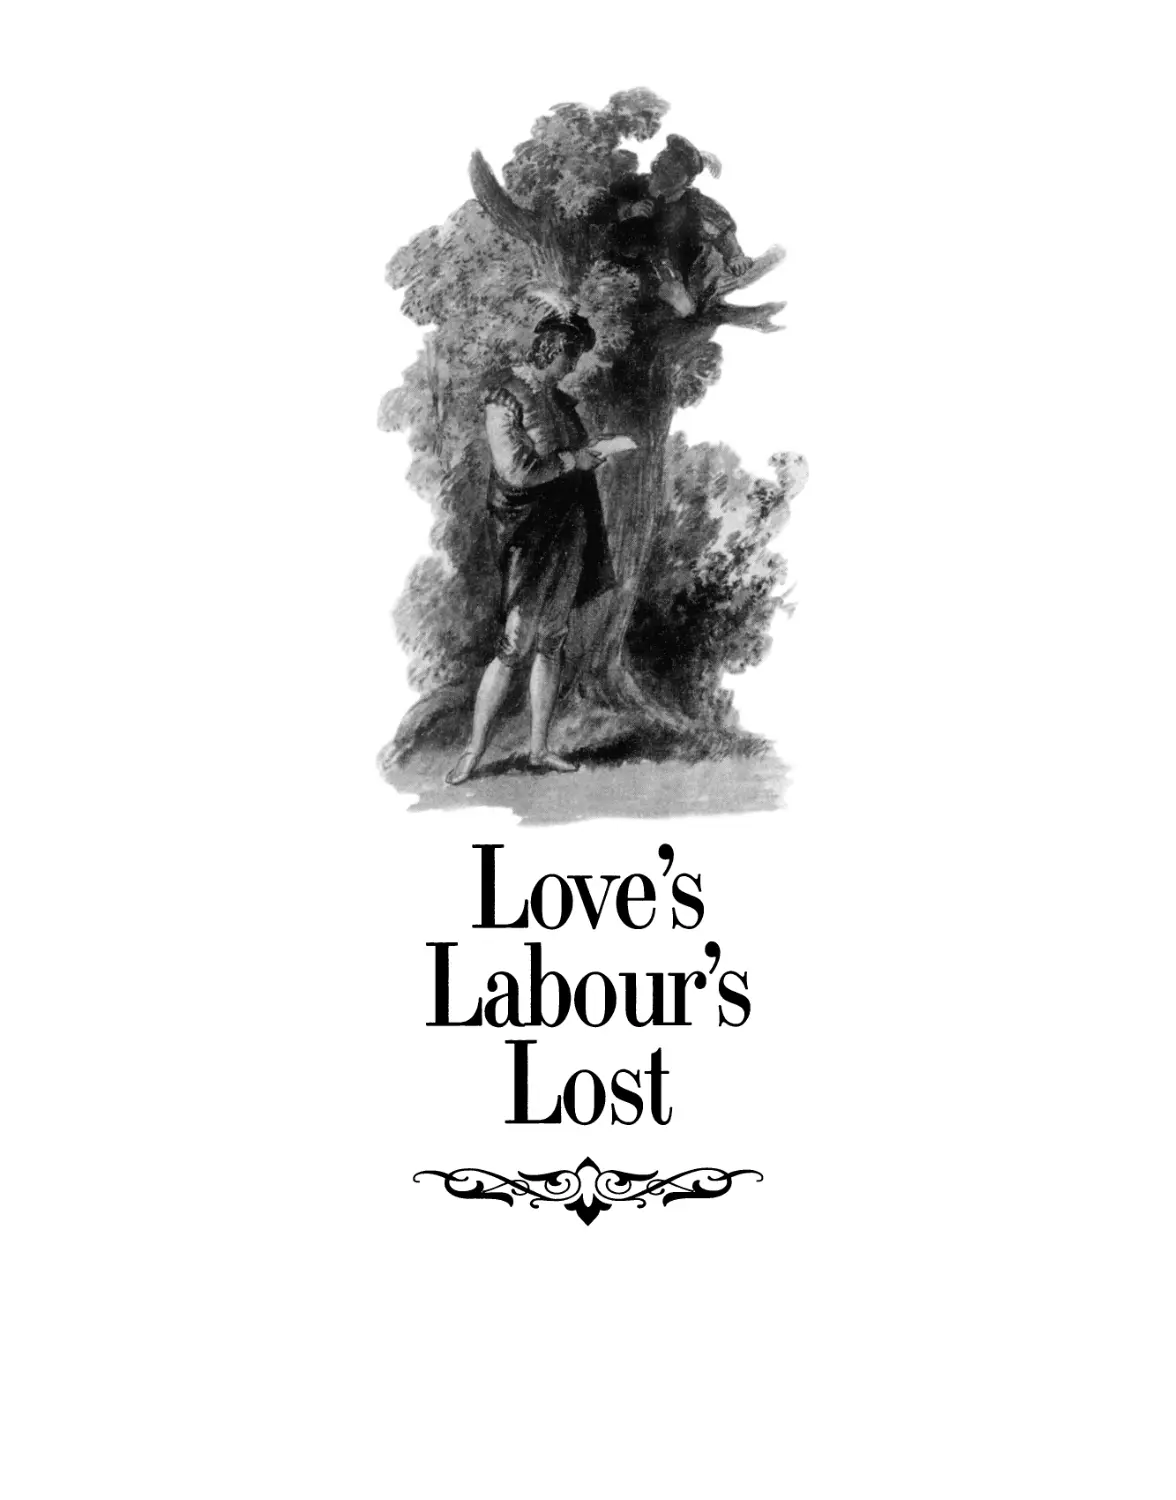 LOVE’S LABOUR’S LOST